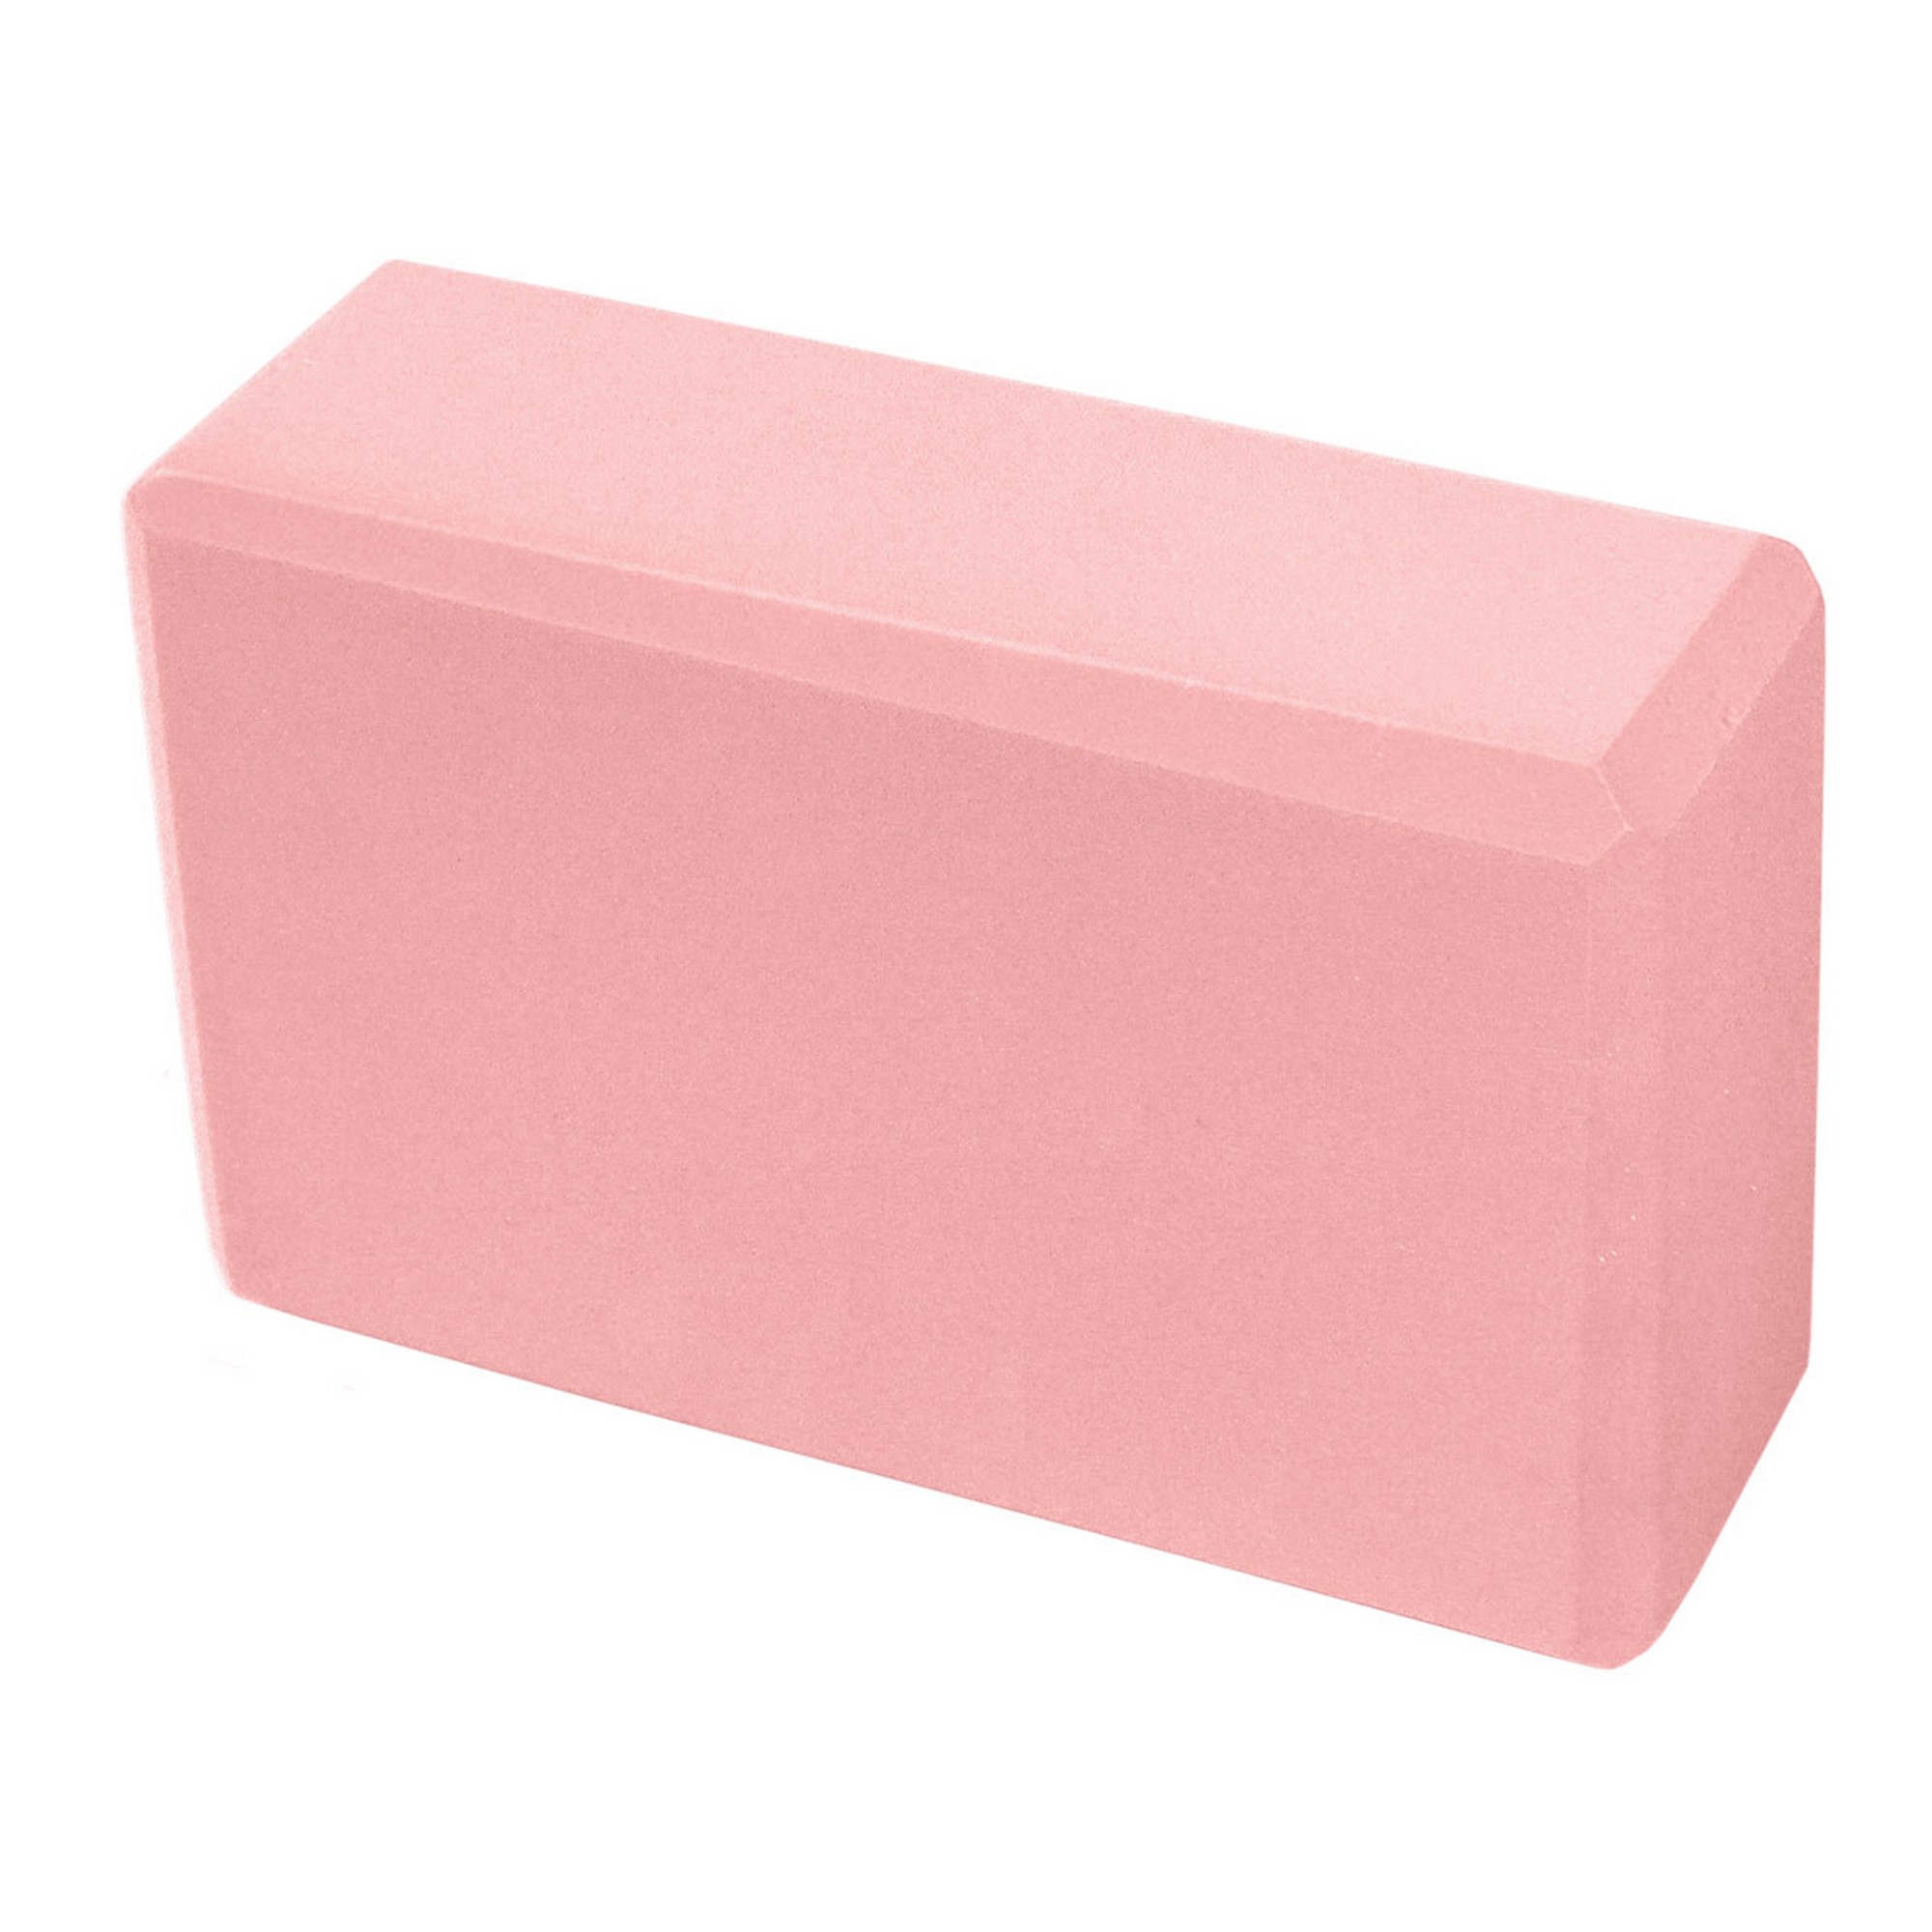 Йога блок Sportex полумягкий, из вспененного ЭВА 22,3х15х7,6 см E39131-9 светло розовый - фото 1